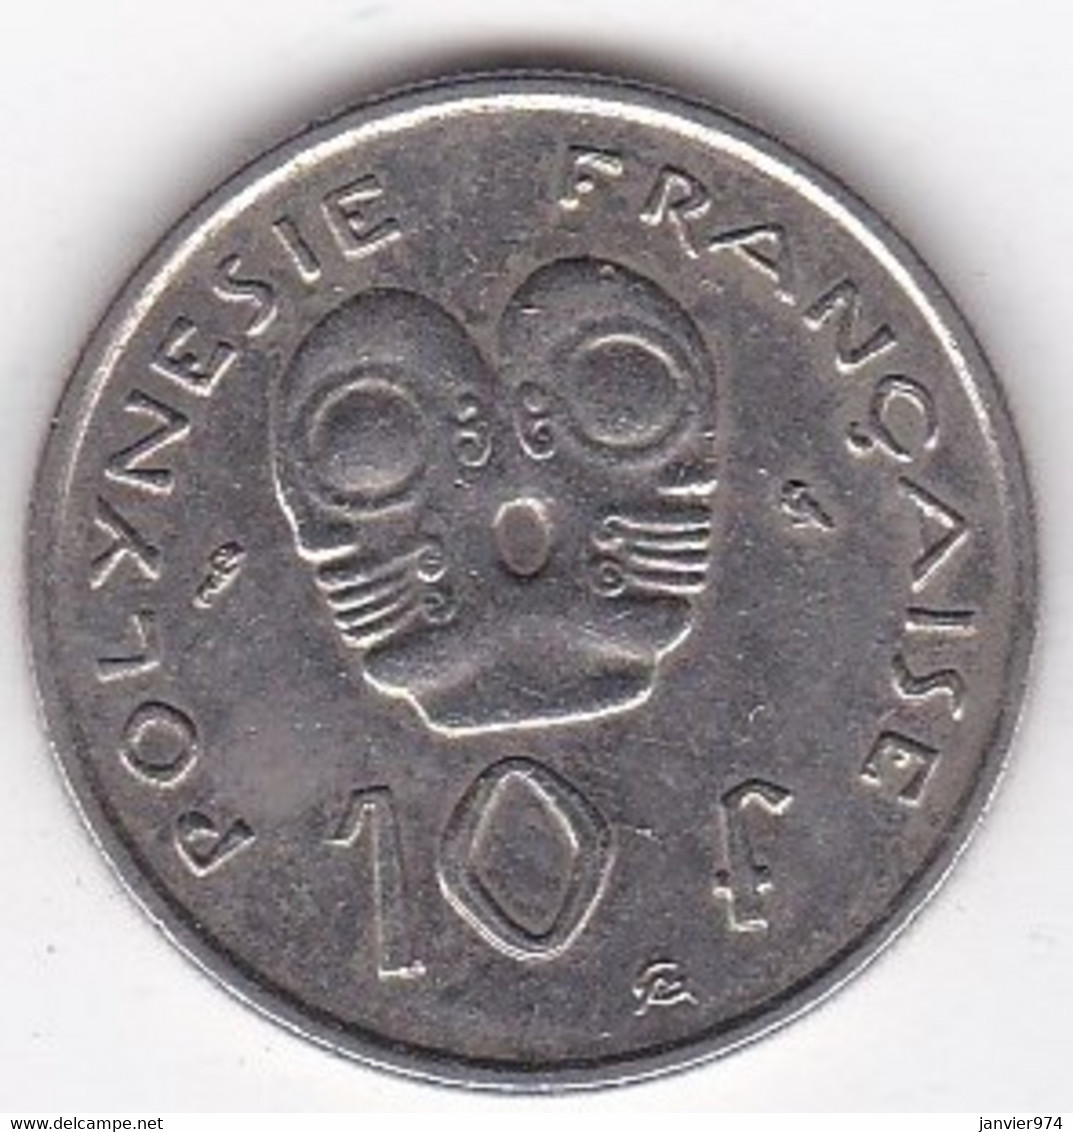 Polynésie Française. 10 Francs 1973 . En Nickel - Polynésie Française